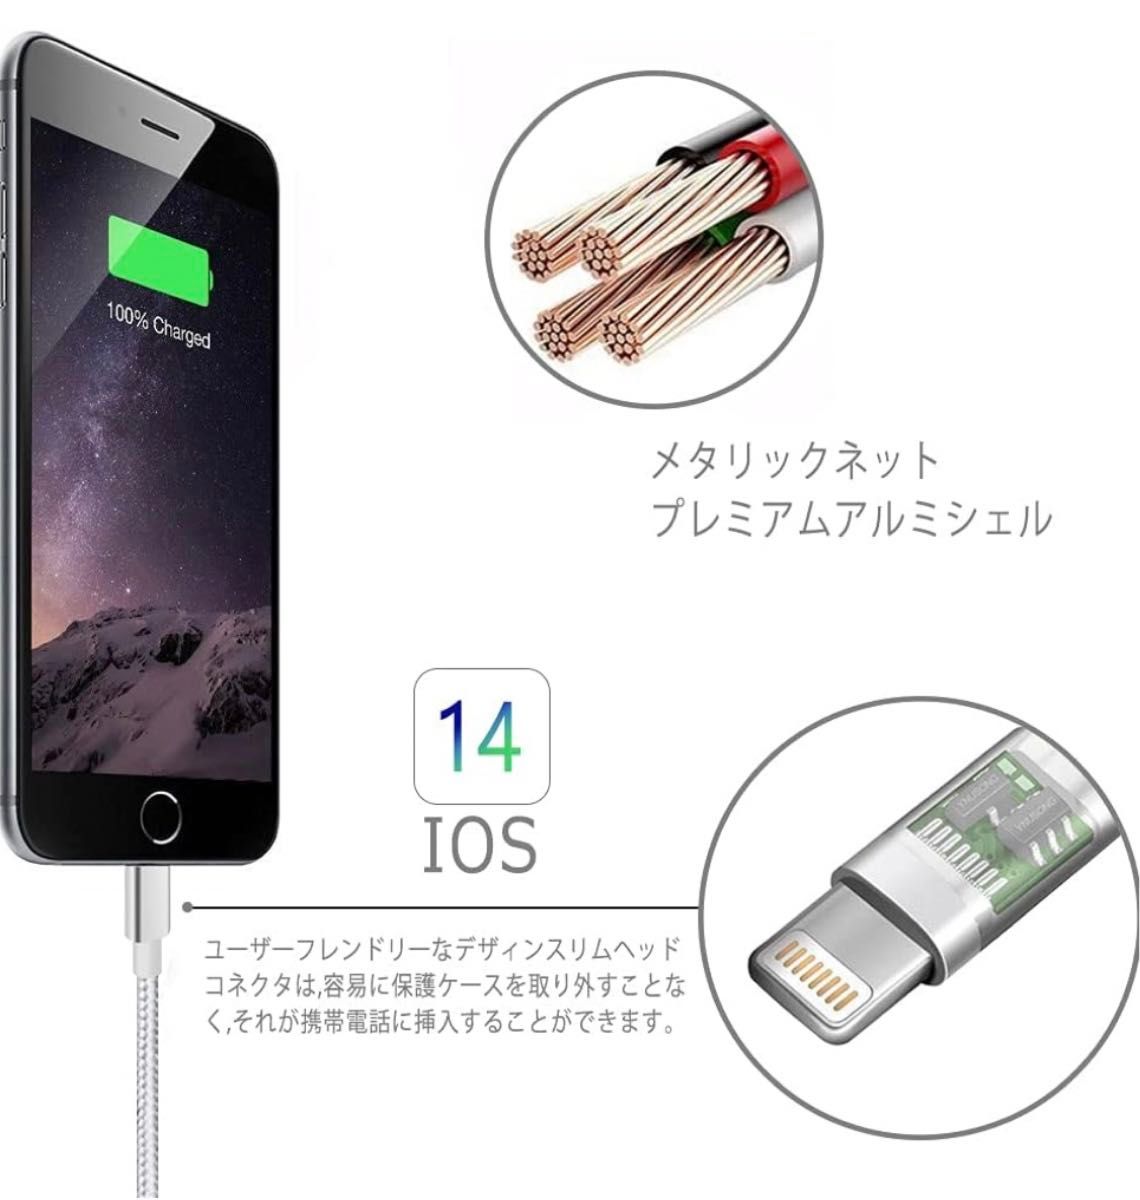 iPhone 充電ケーブル【MFi認証】2M 3本セット  (シルバーグレー) ライトニング 高耐久 断線しづらい ナイロン